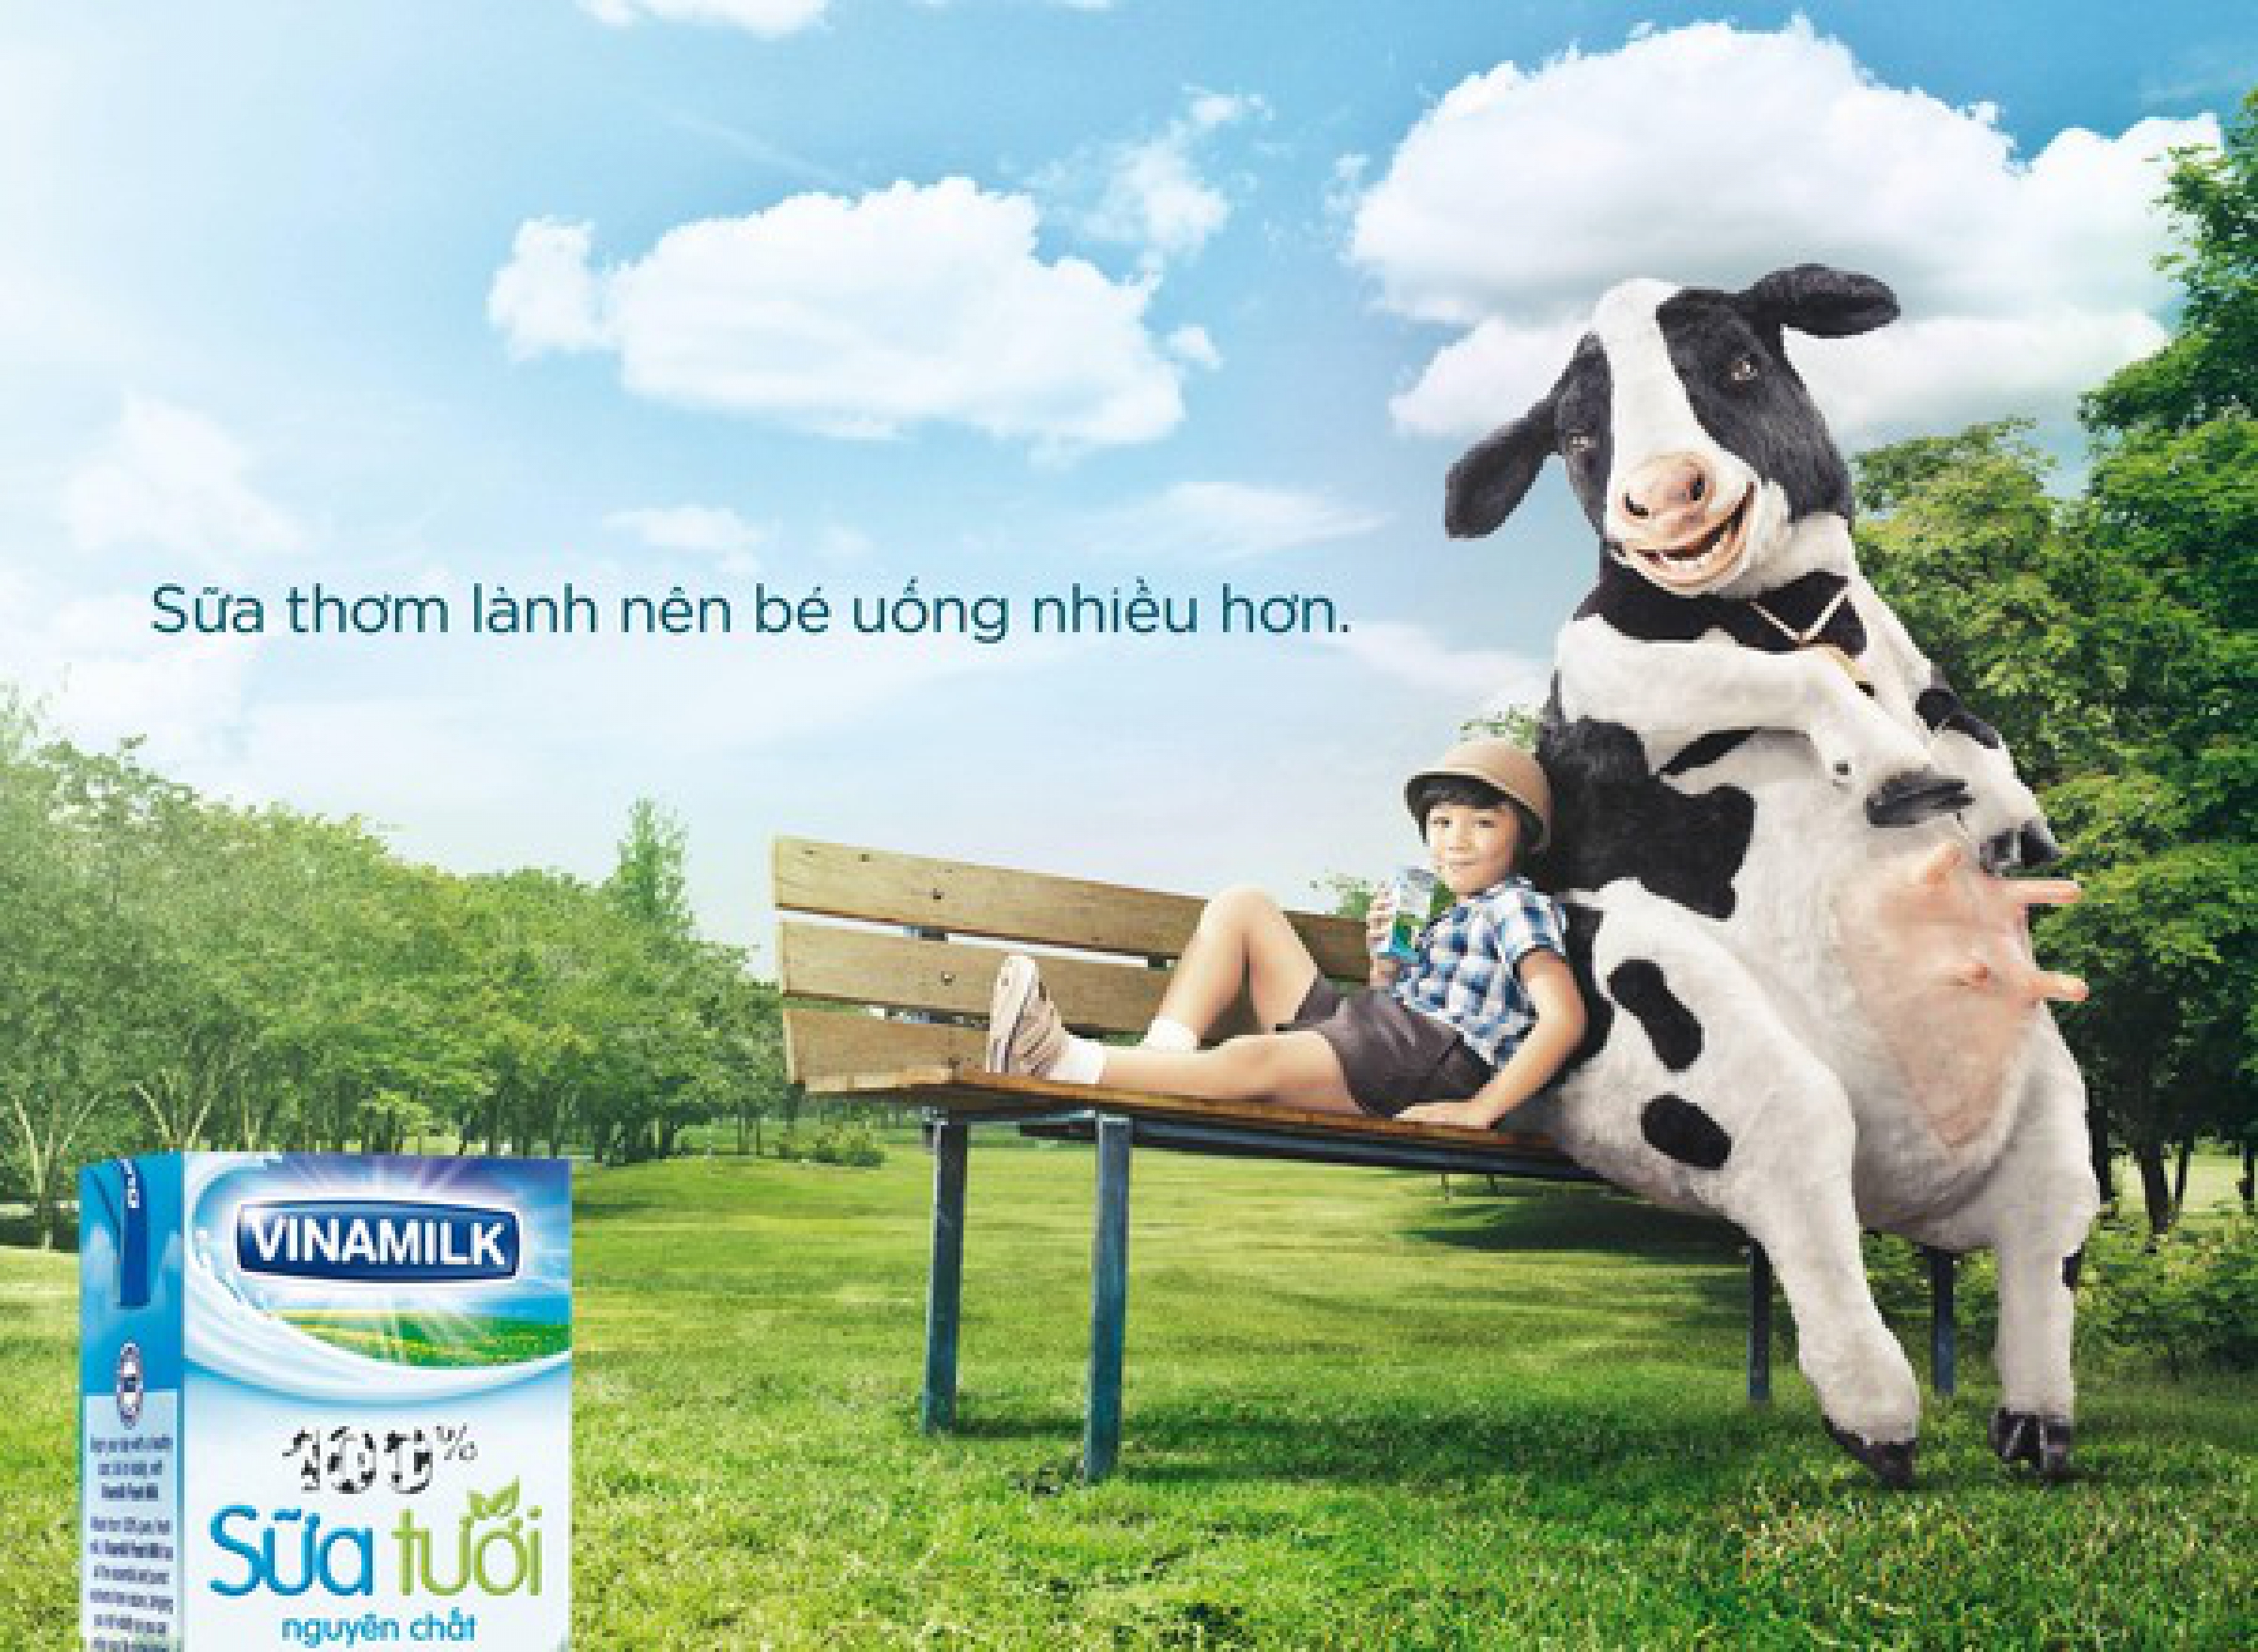 Quảng cáo sữa vinamilk chiến thuật marketing gây nghiện cho khách hàng   Phan Media